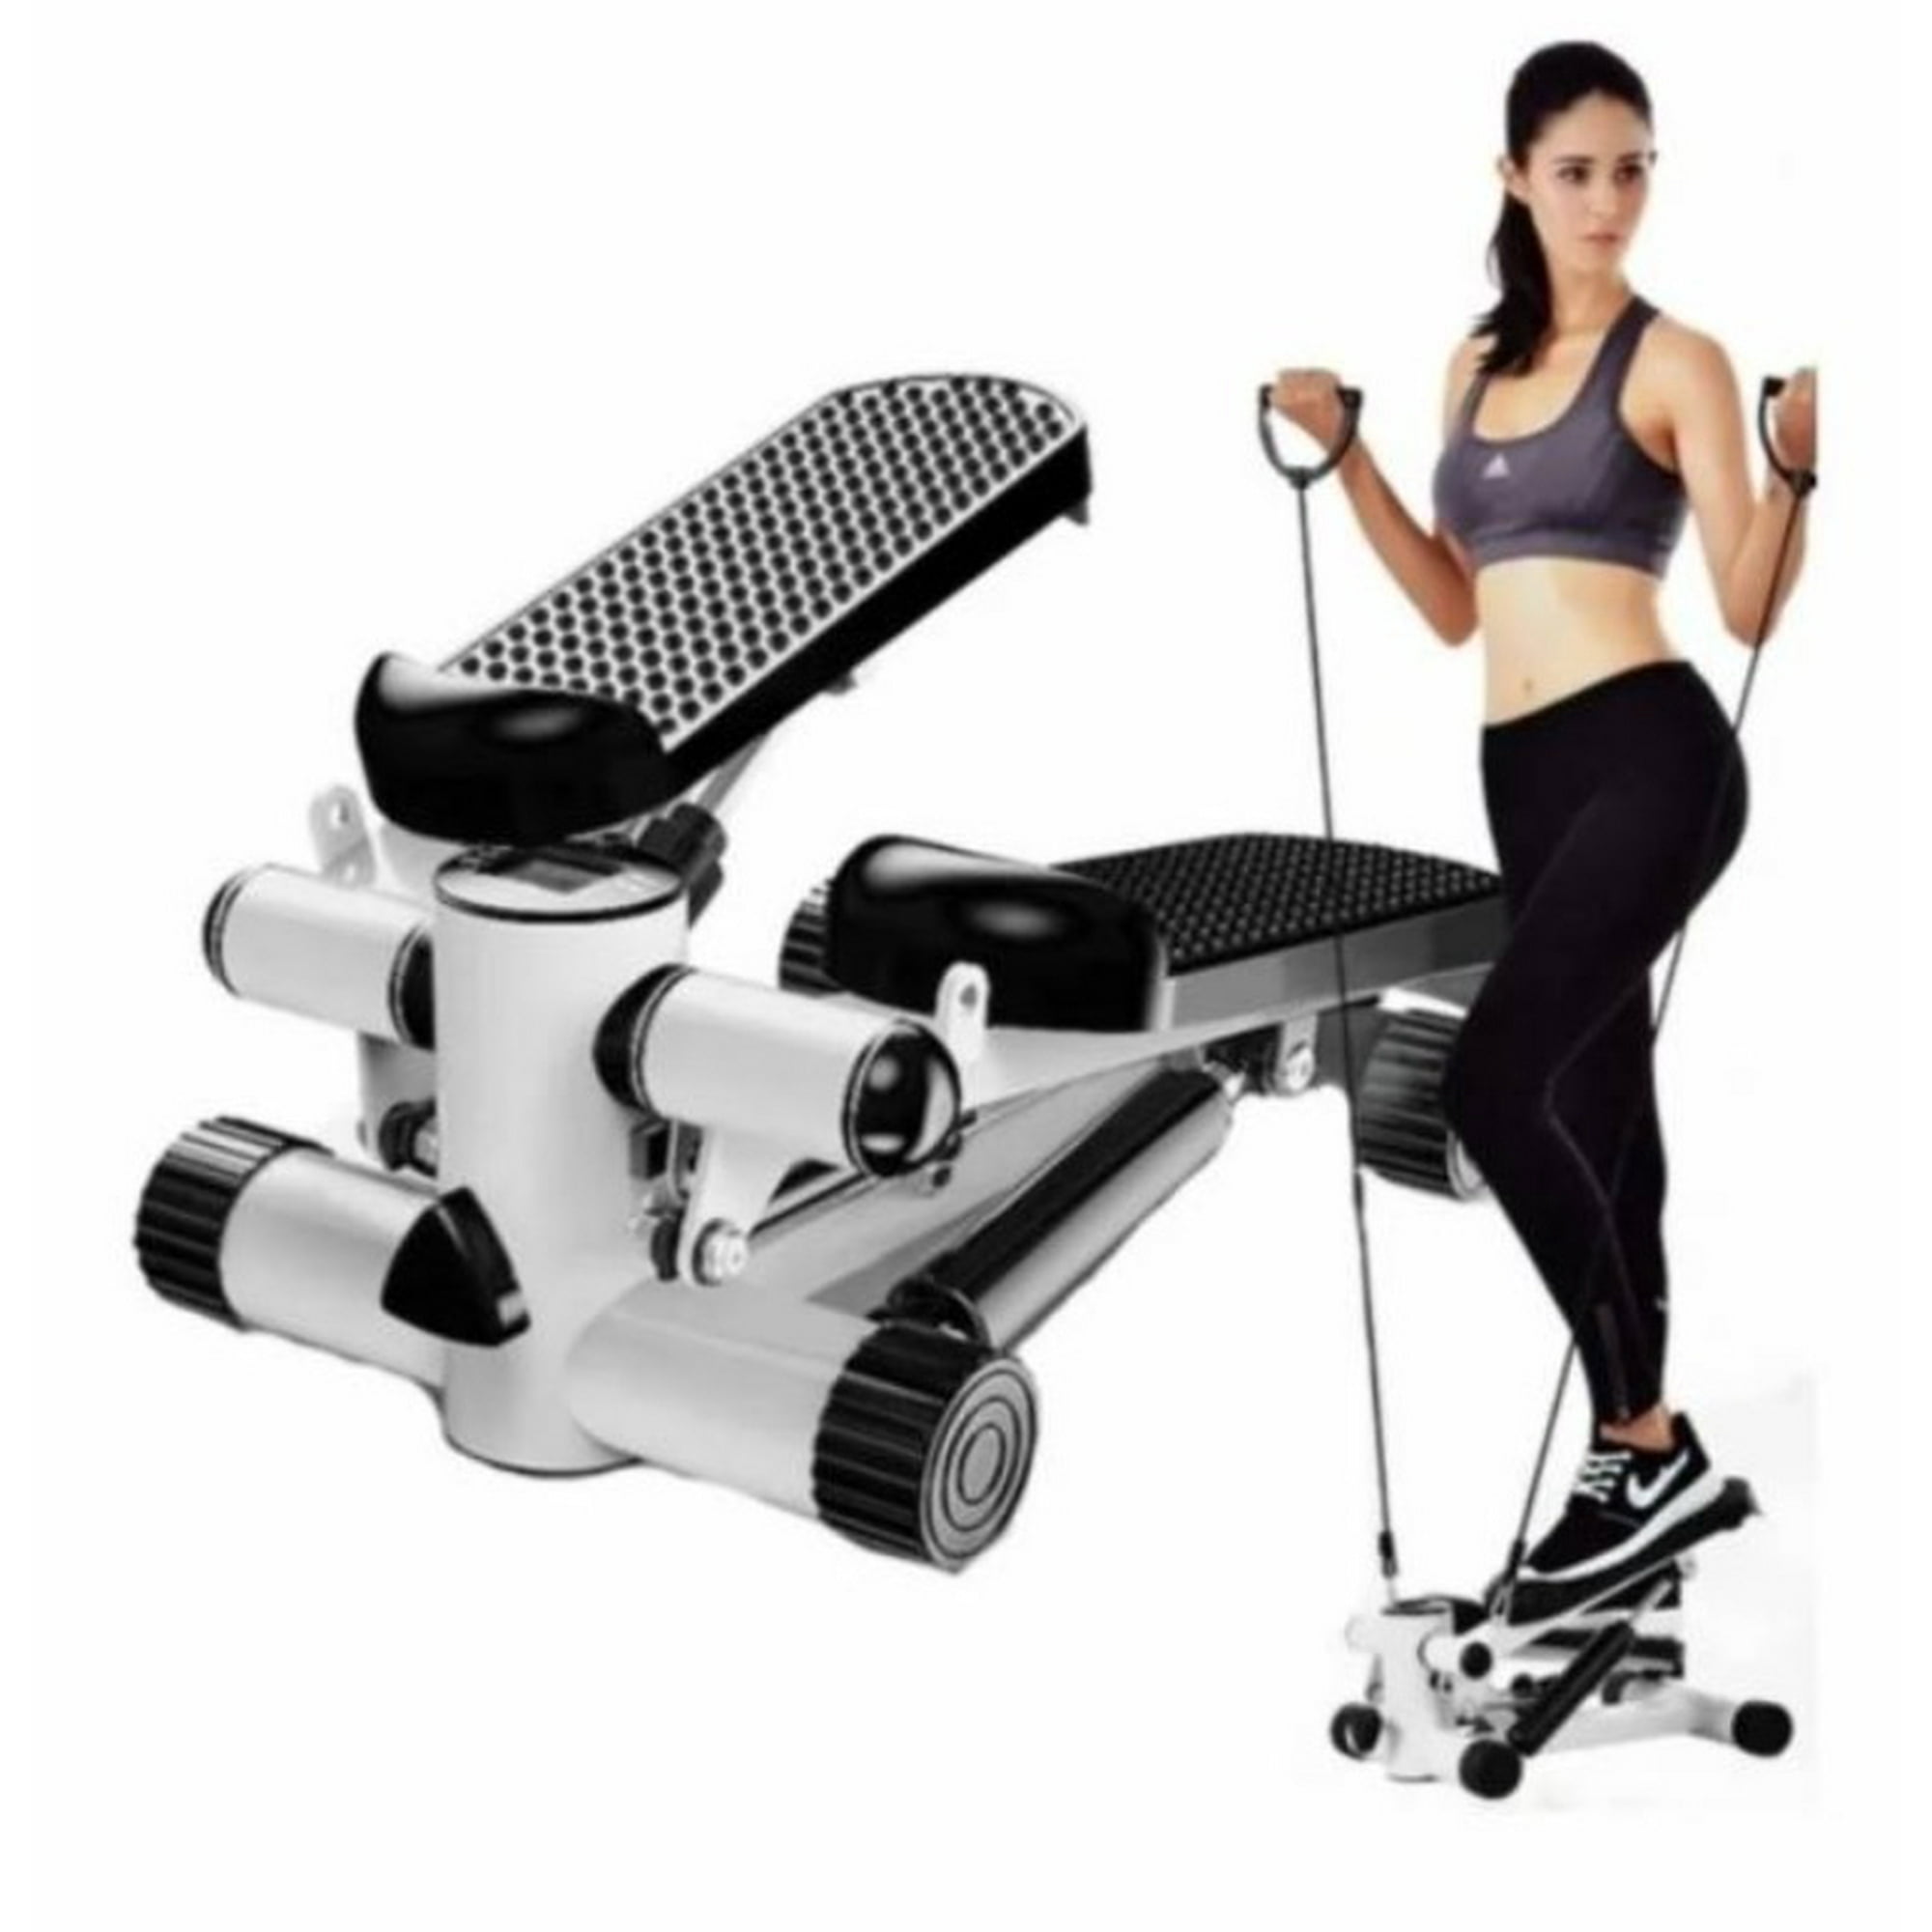 Maquina Escaladora Ejercicios Sunny Health Fitness Gym